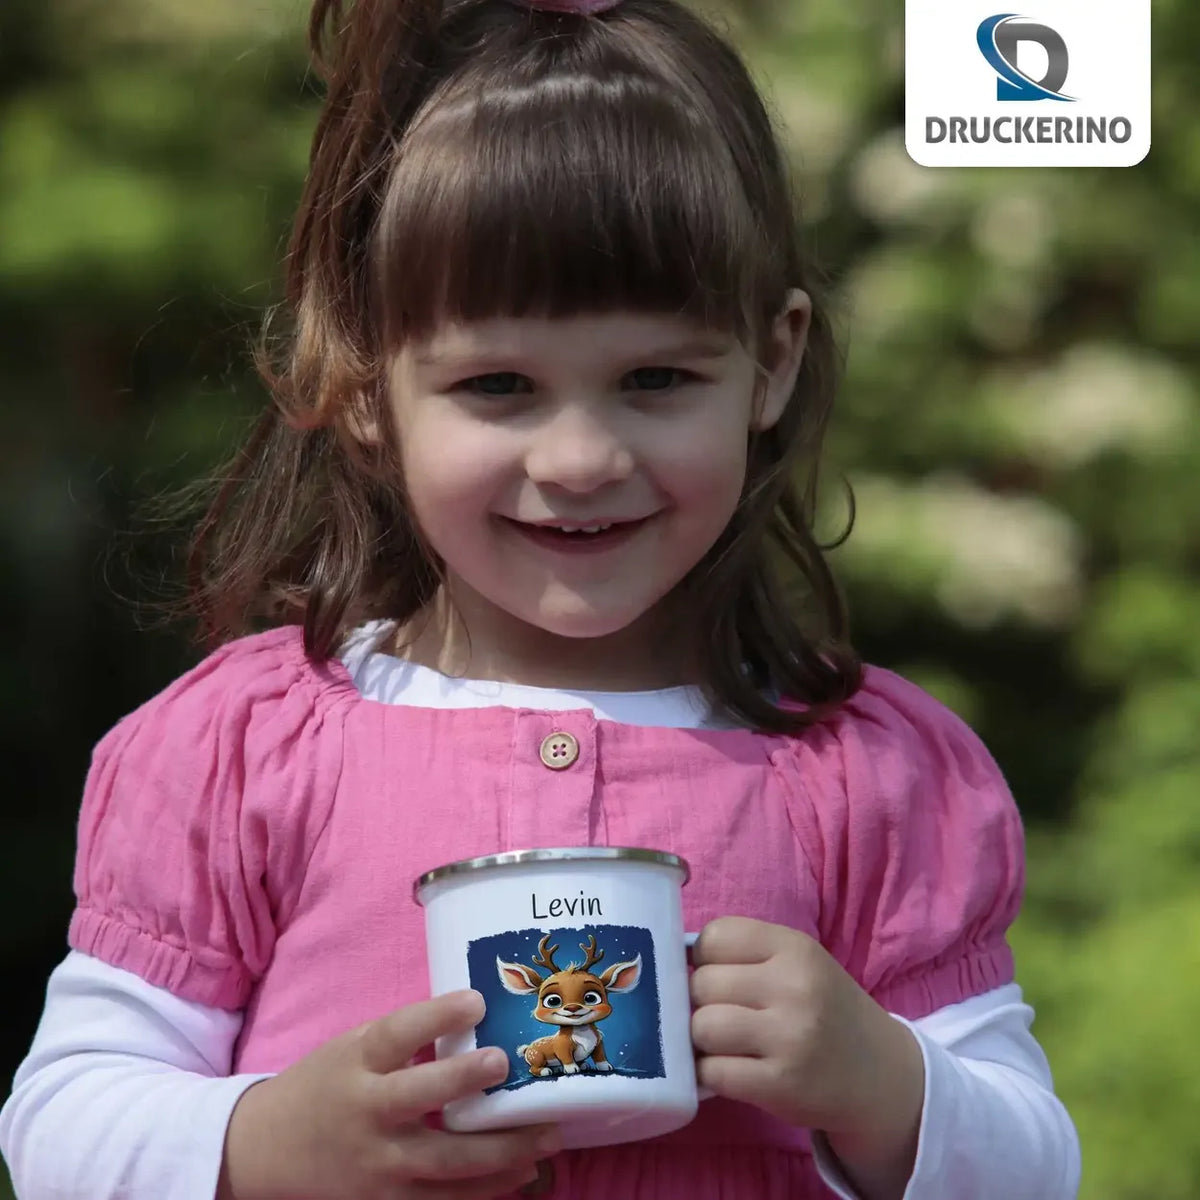 Abenteuerreise der kleinen Tiere Emaille Tasse für Kinder personalisiert Emailletasse Druckerino   